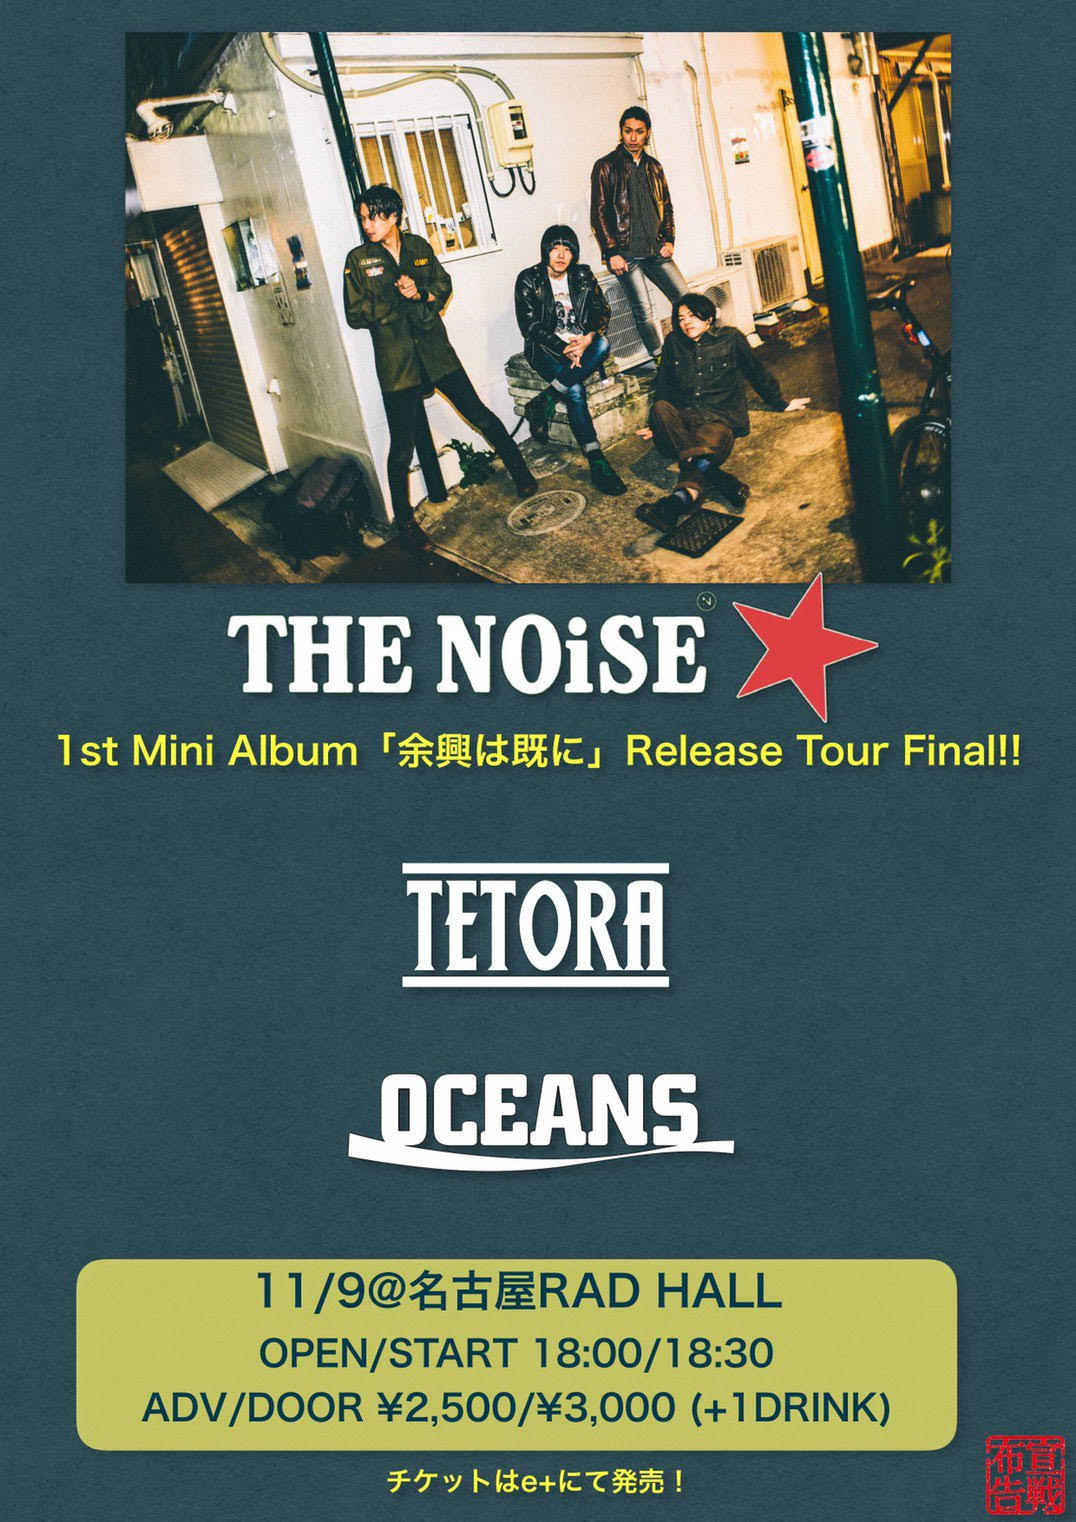 【THE NOiSE 1st mini album "余興は既に" Release Tour Final!!】